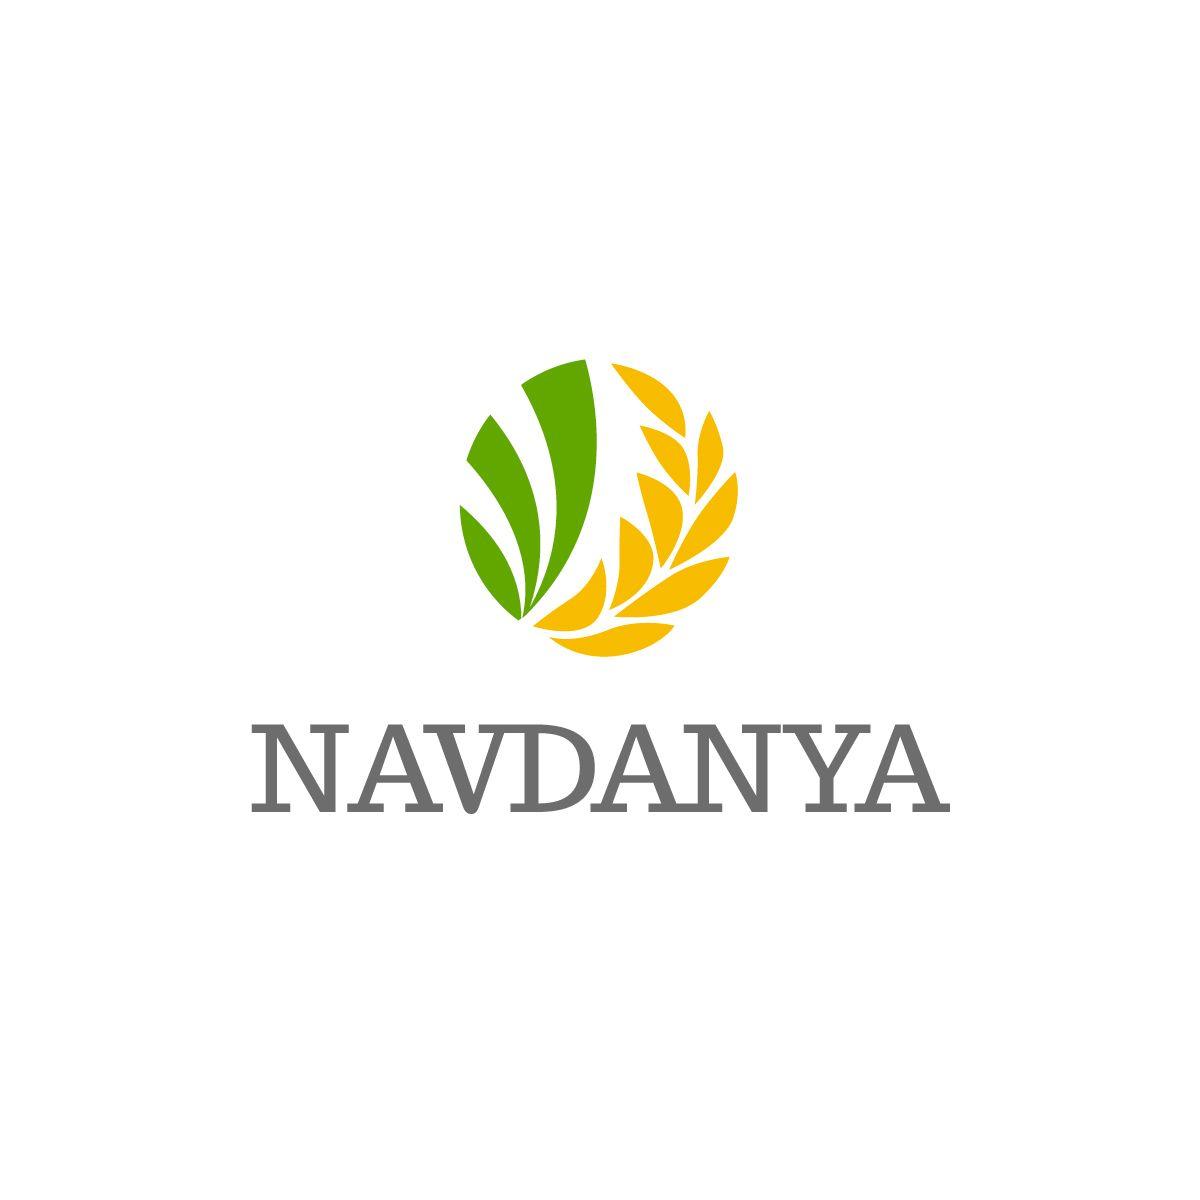 Rice Leaf Logo - Elegant, Playful, Business Logo Design for Navdanya